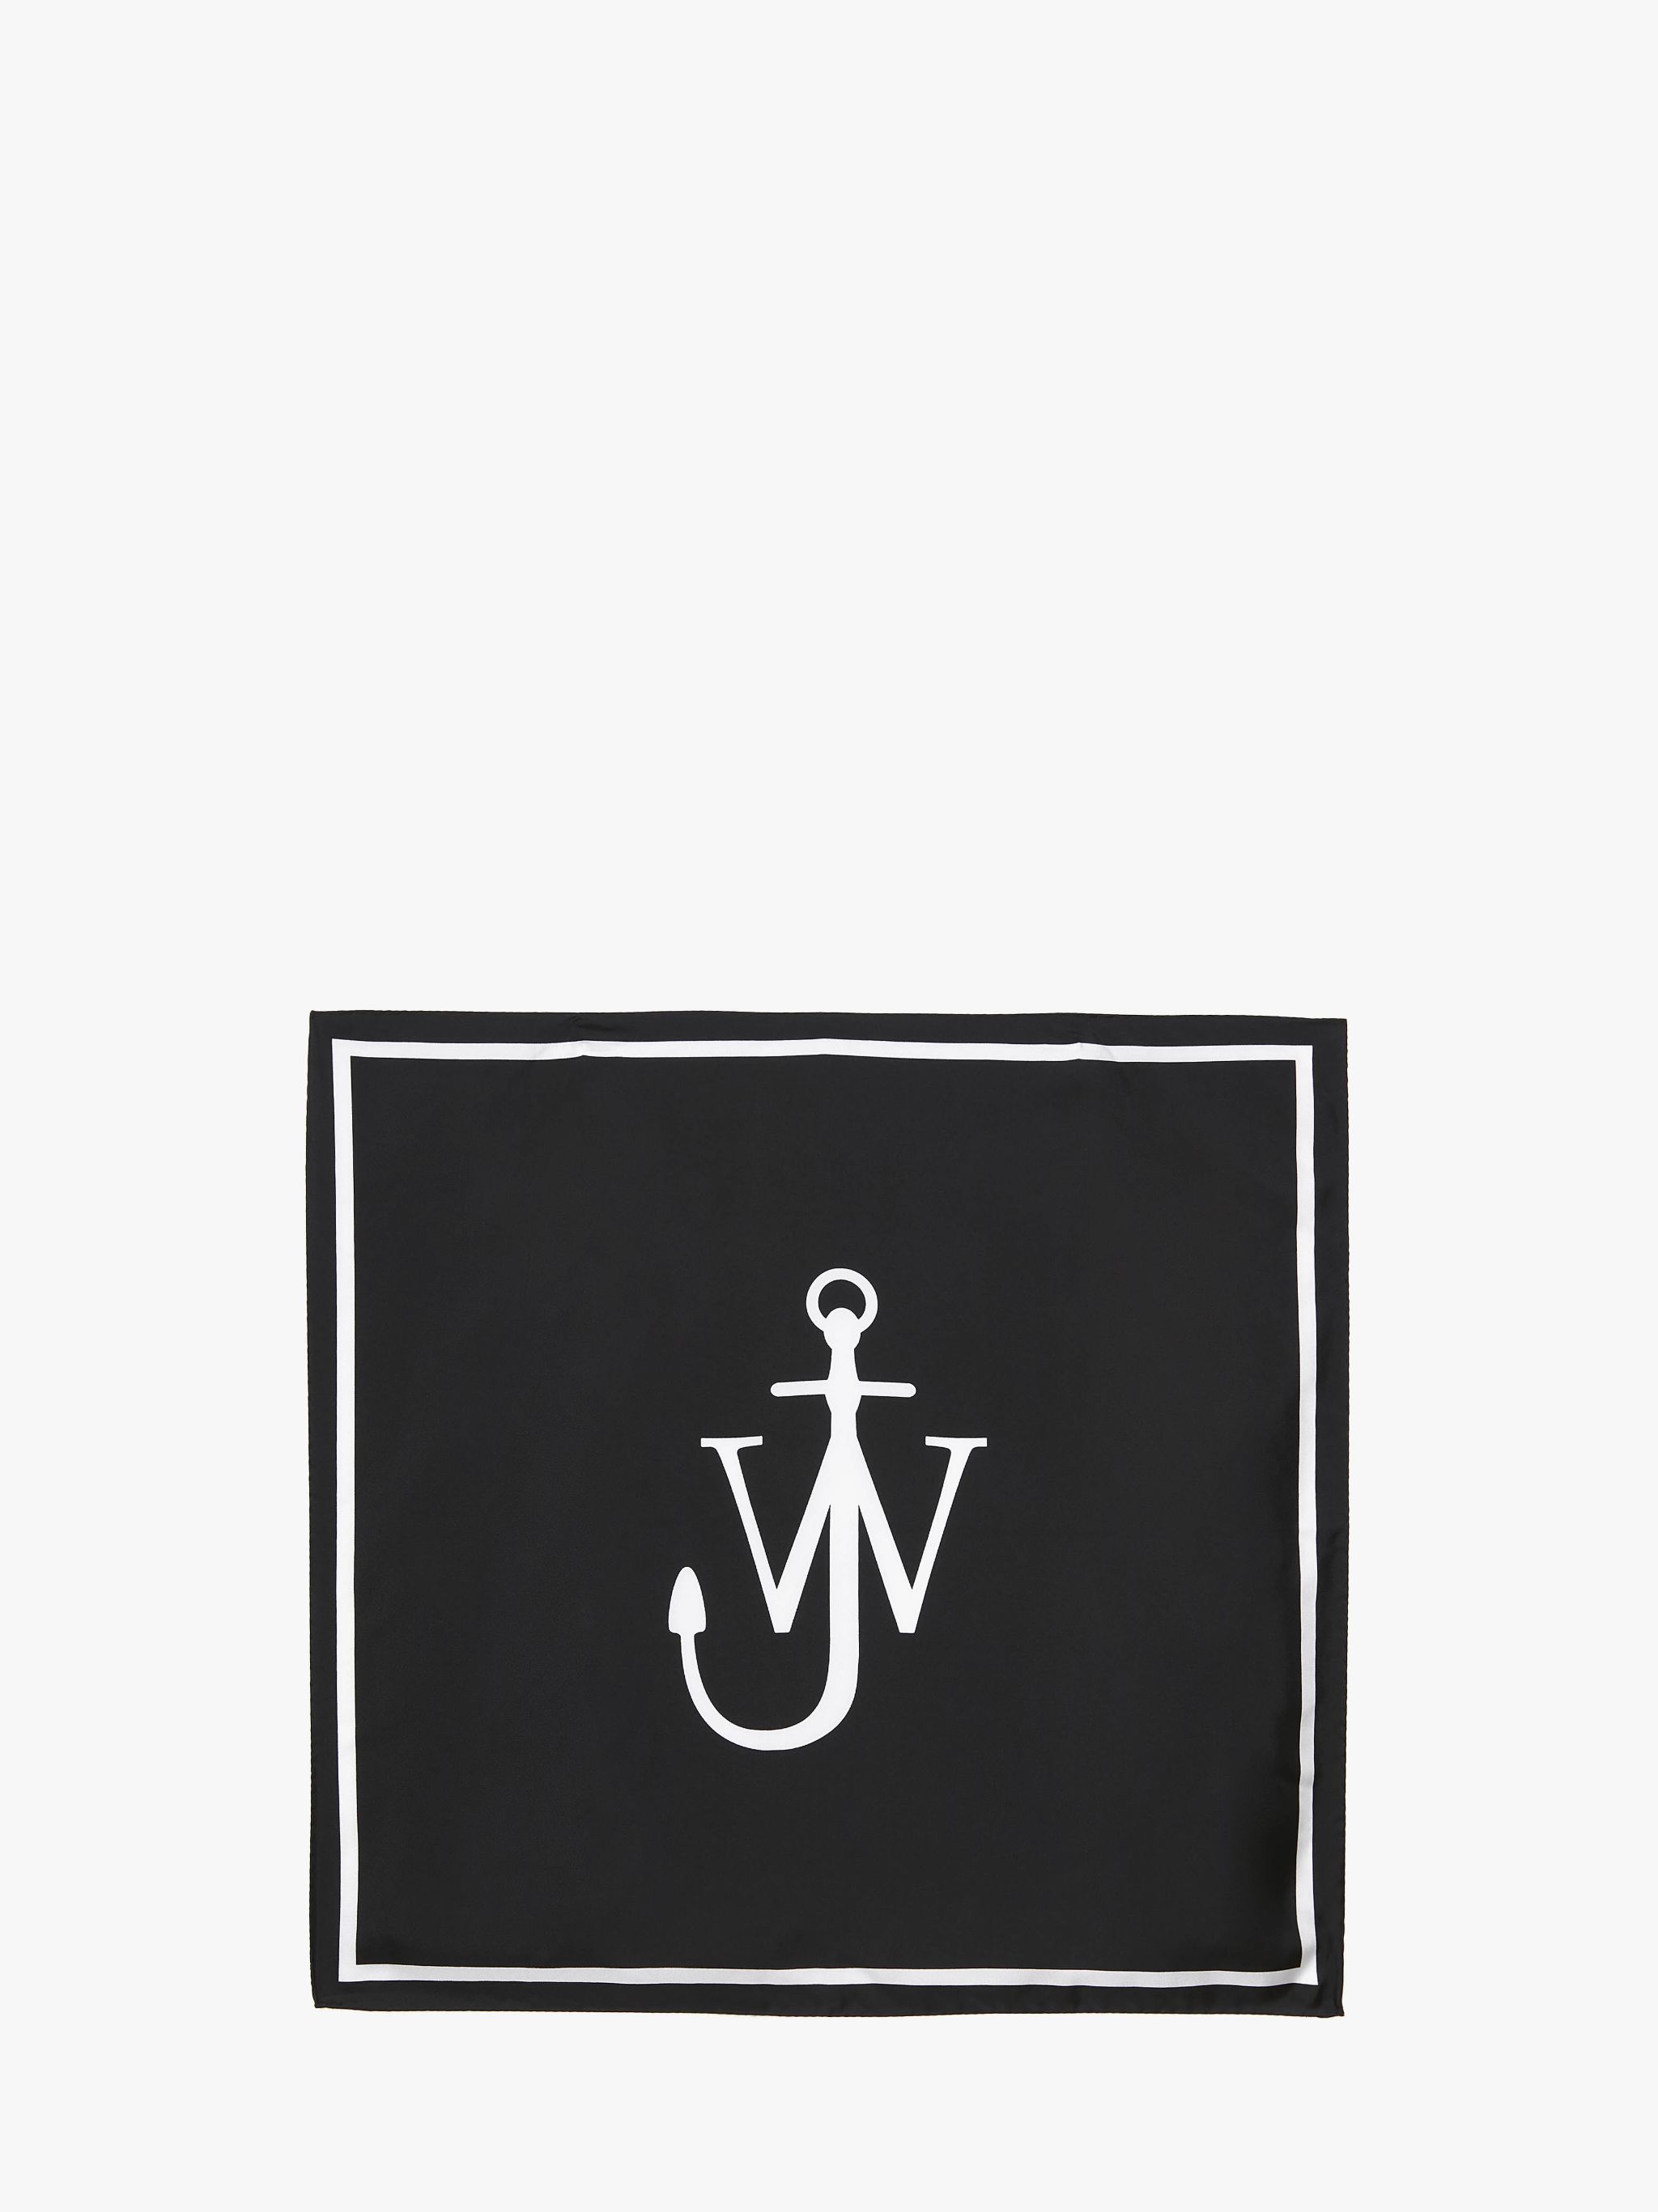 Шелковый платок с логотипом JW Anderson, белый дизайнерская шаль с французской лошадью шелковый шарф 130 см саржевый шарф роскошный саржевый шарф роскошный дизайнерский шелковый шарф